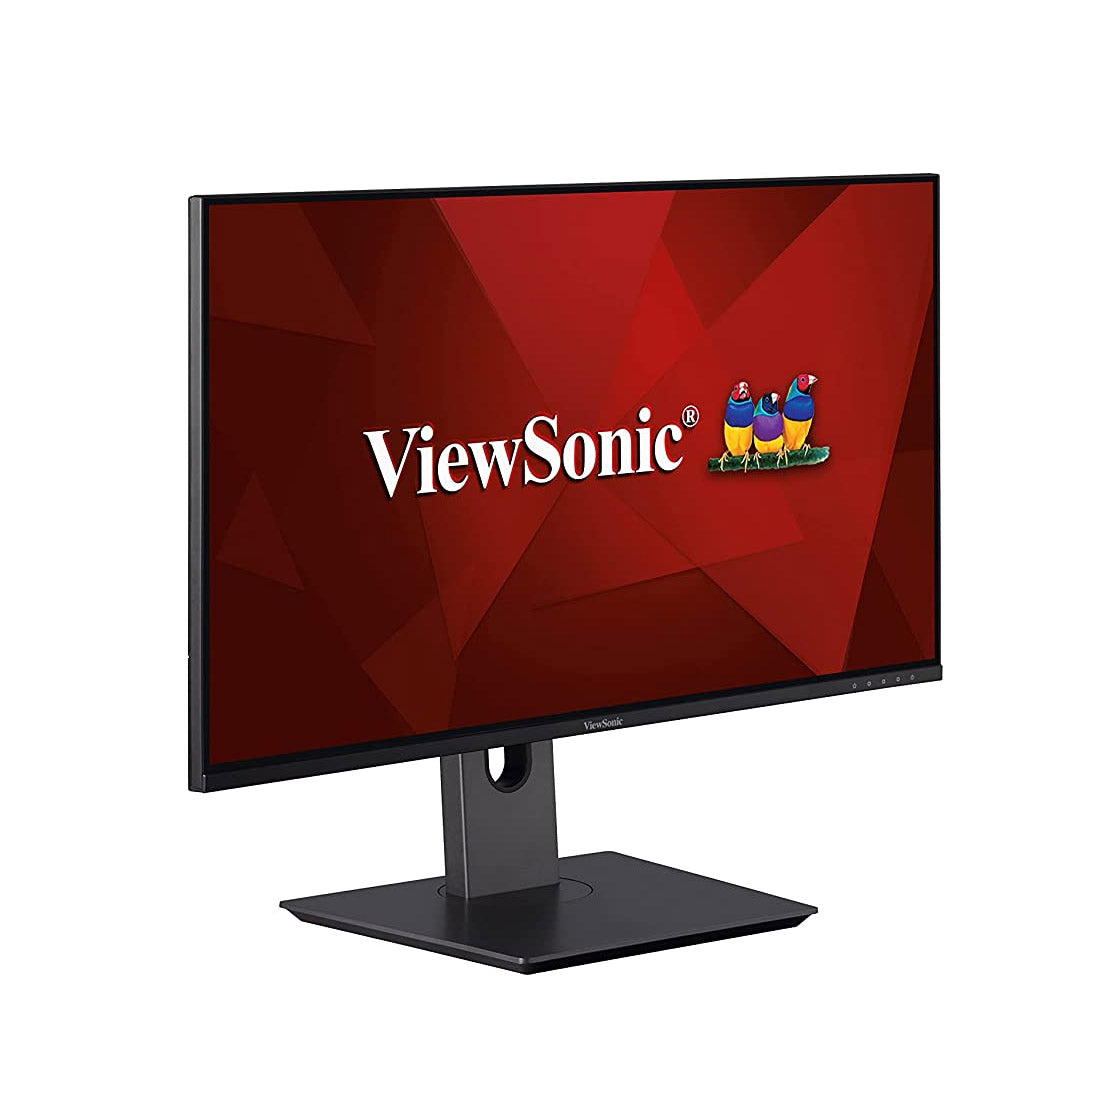 ViewSonic VX2480-SHDJ 24-इंच फुल HD IPS मॉनिटर 4ms रिस्पांस टाइम और आई केयर टेक्नोलॉजी के साथ